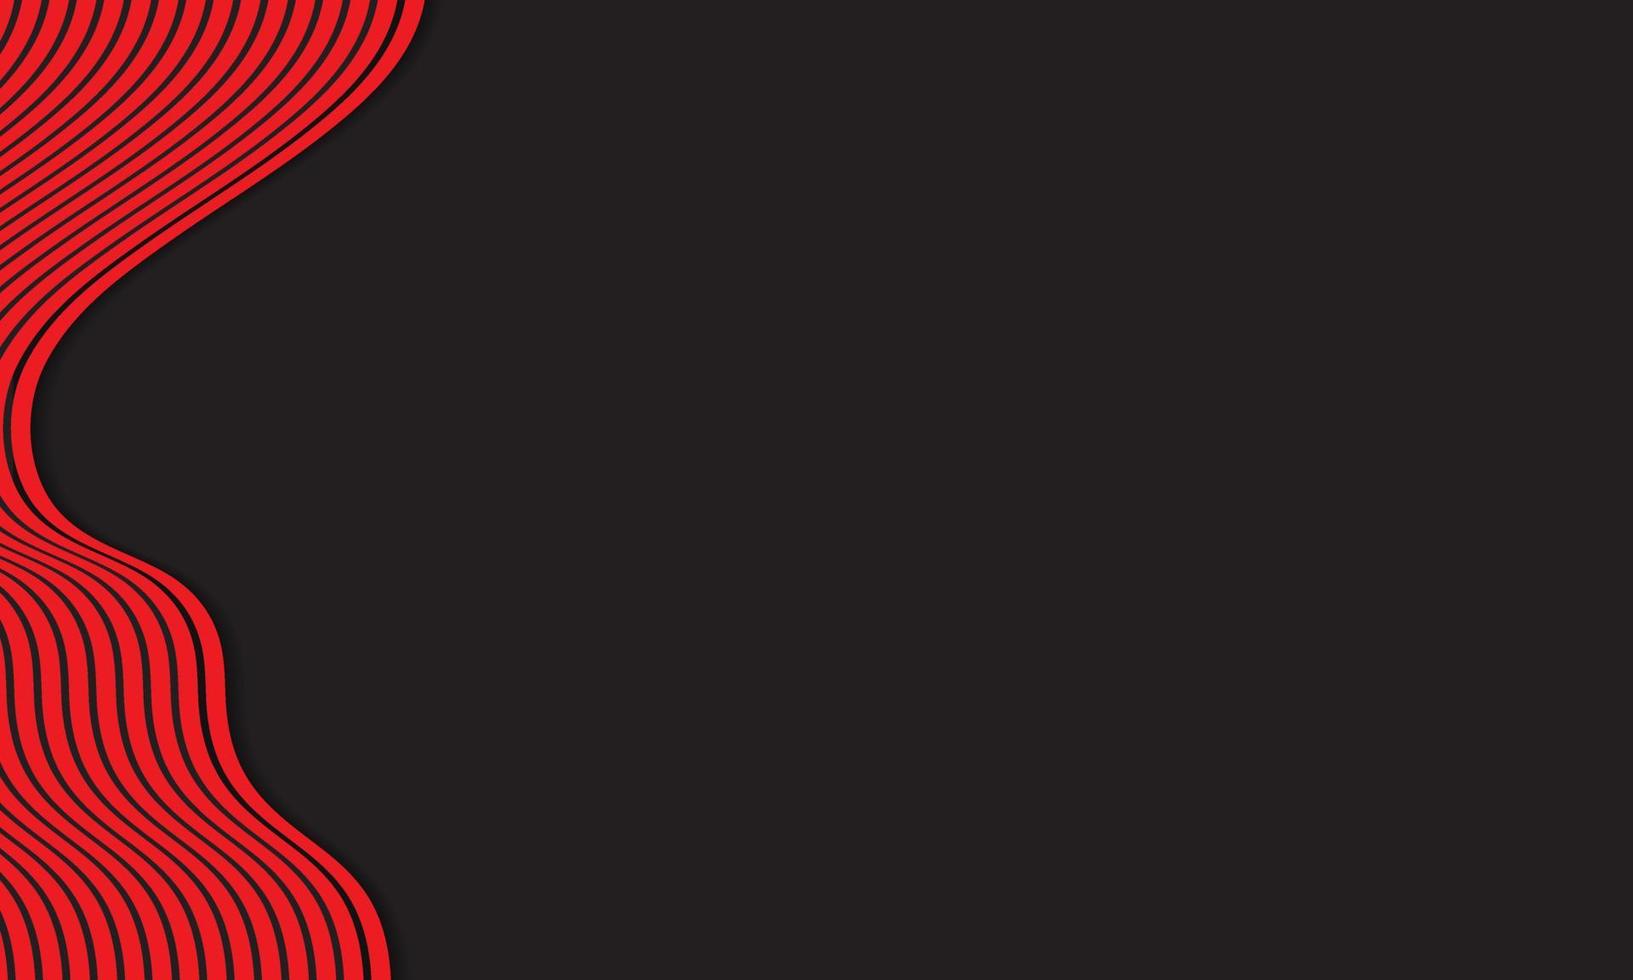 abstrakt randig bakgrund i svart och rött med vågiga linjer mönster. vektor